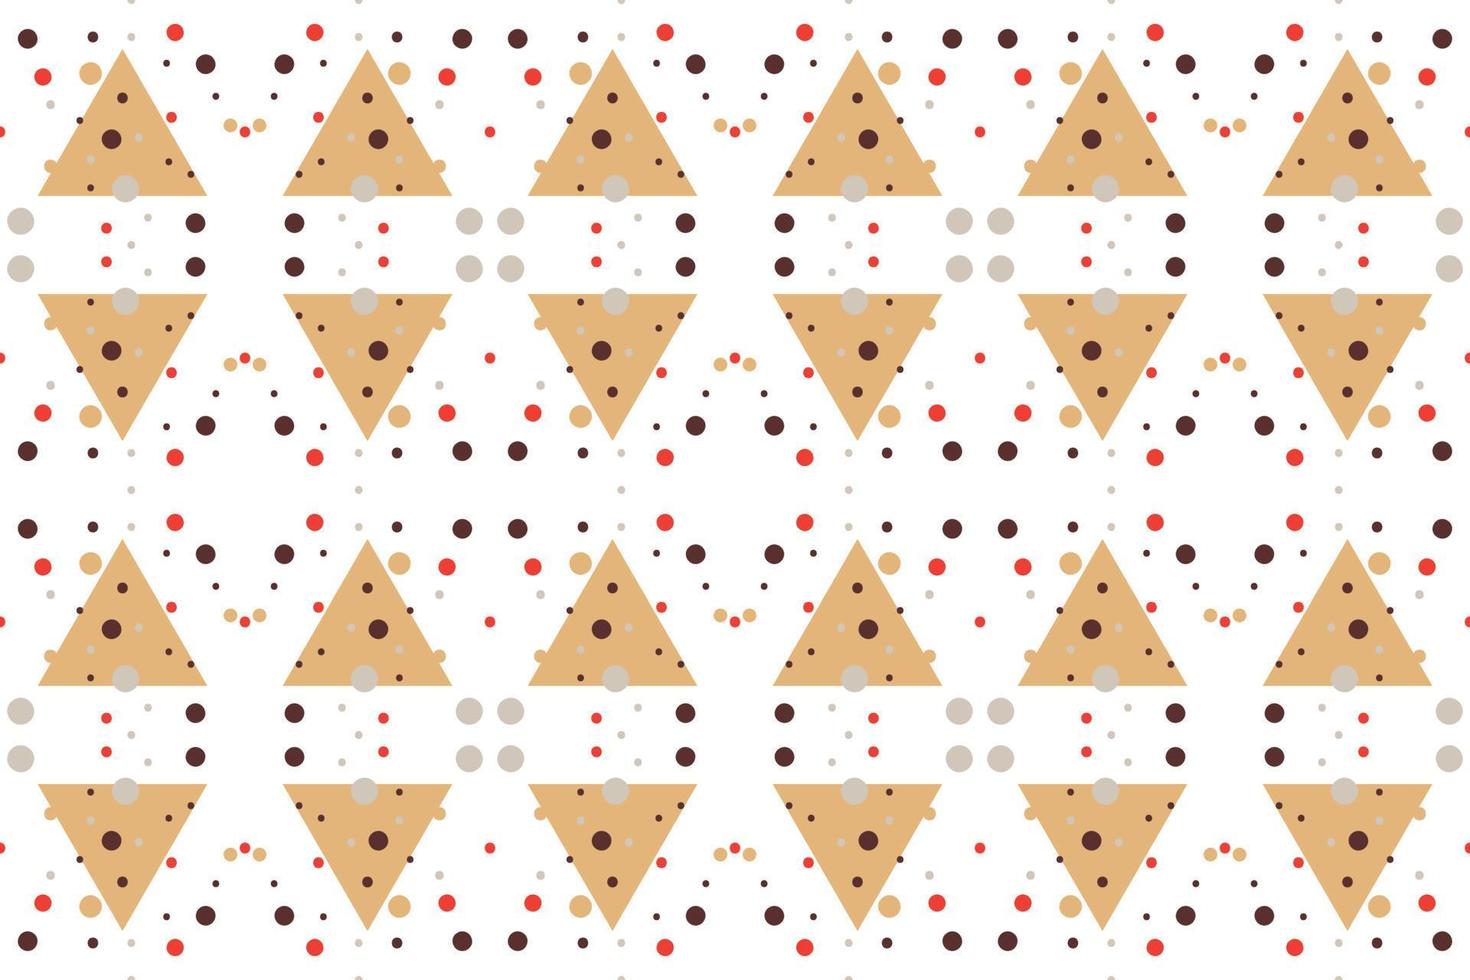 formas geométricas de moda patrón sin fisuras consiste en un poliedro como un triángulo cuadrado circular utilizado en la industria textil, patrón de tela, papel, papel pintado, portada de libro vector